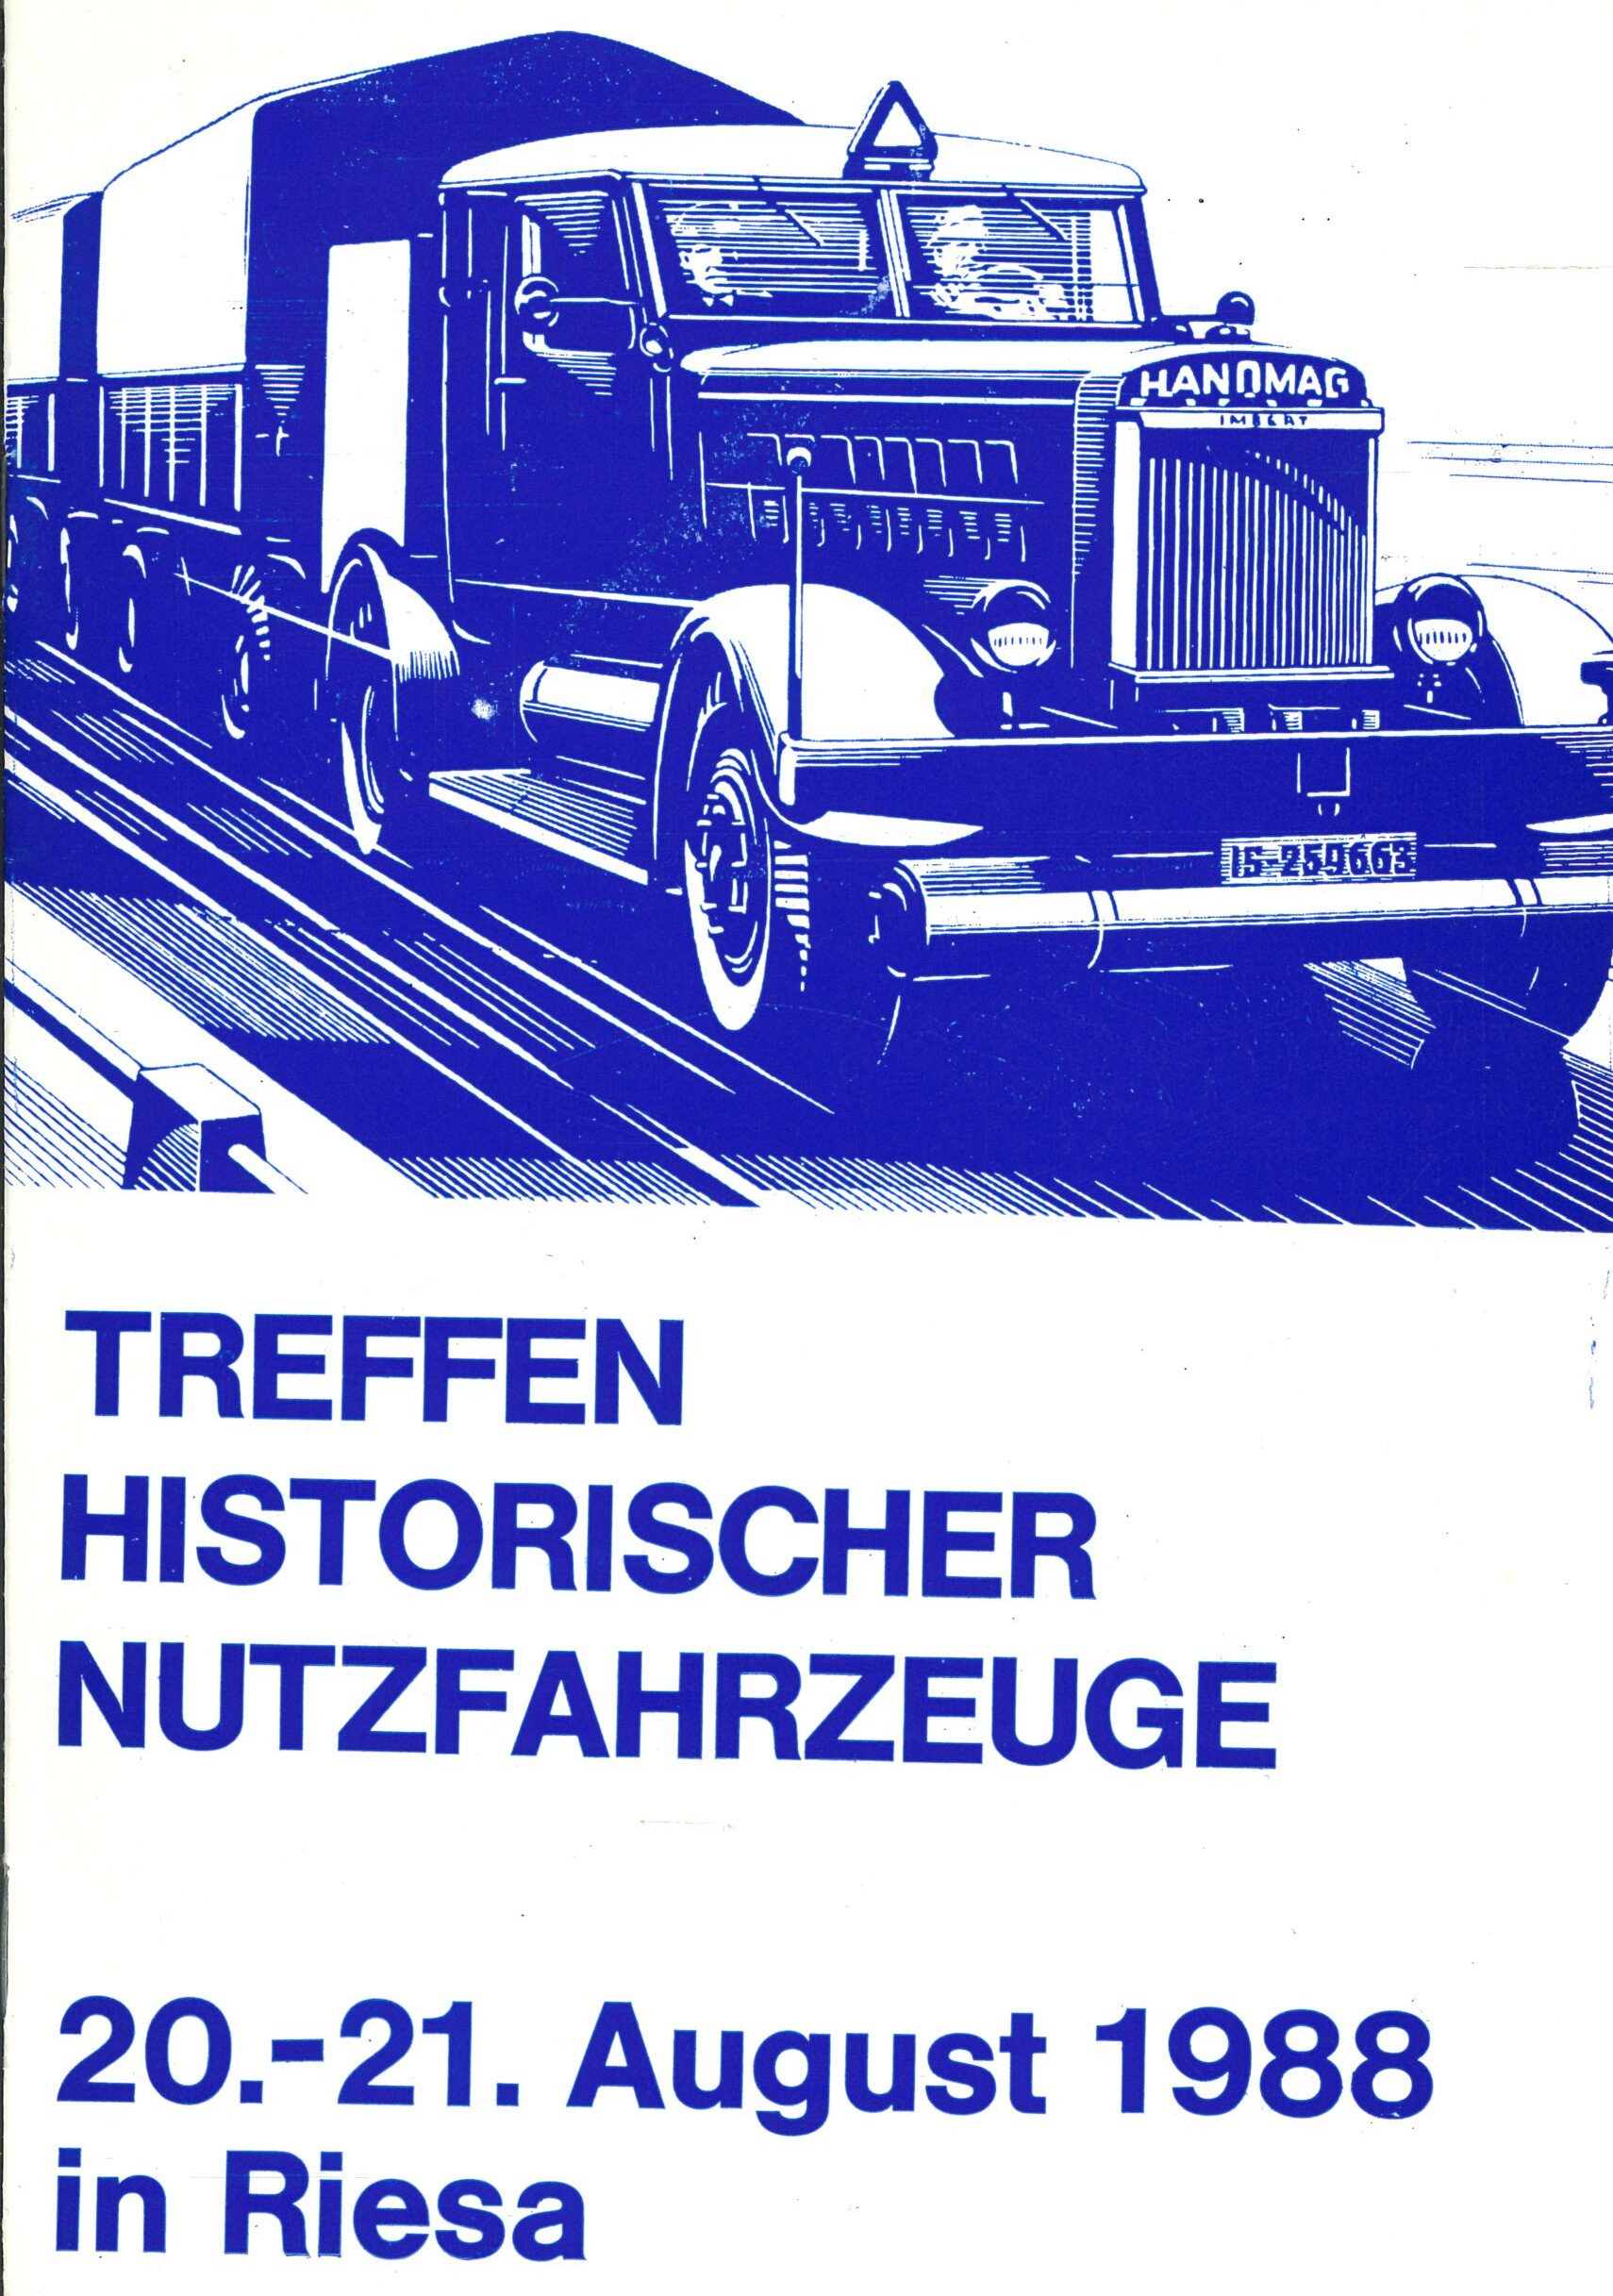 Treffen historischer Nutzfahrzeuge am 20.-21. August in Riesa (Feuerwehrmuseum Grethen CC BY-NC-SA)